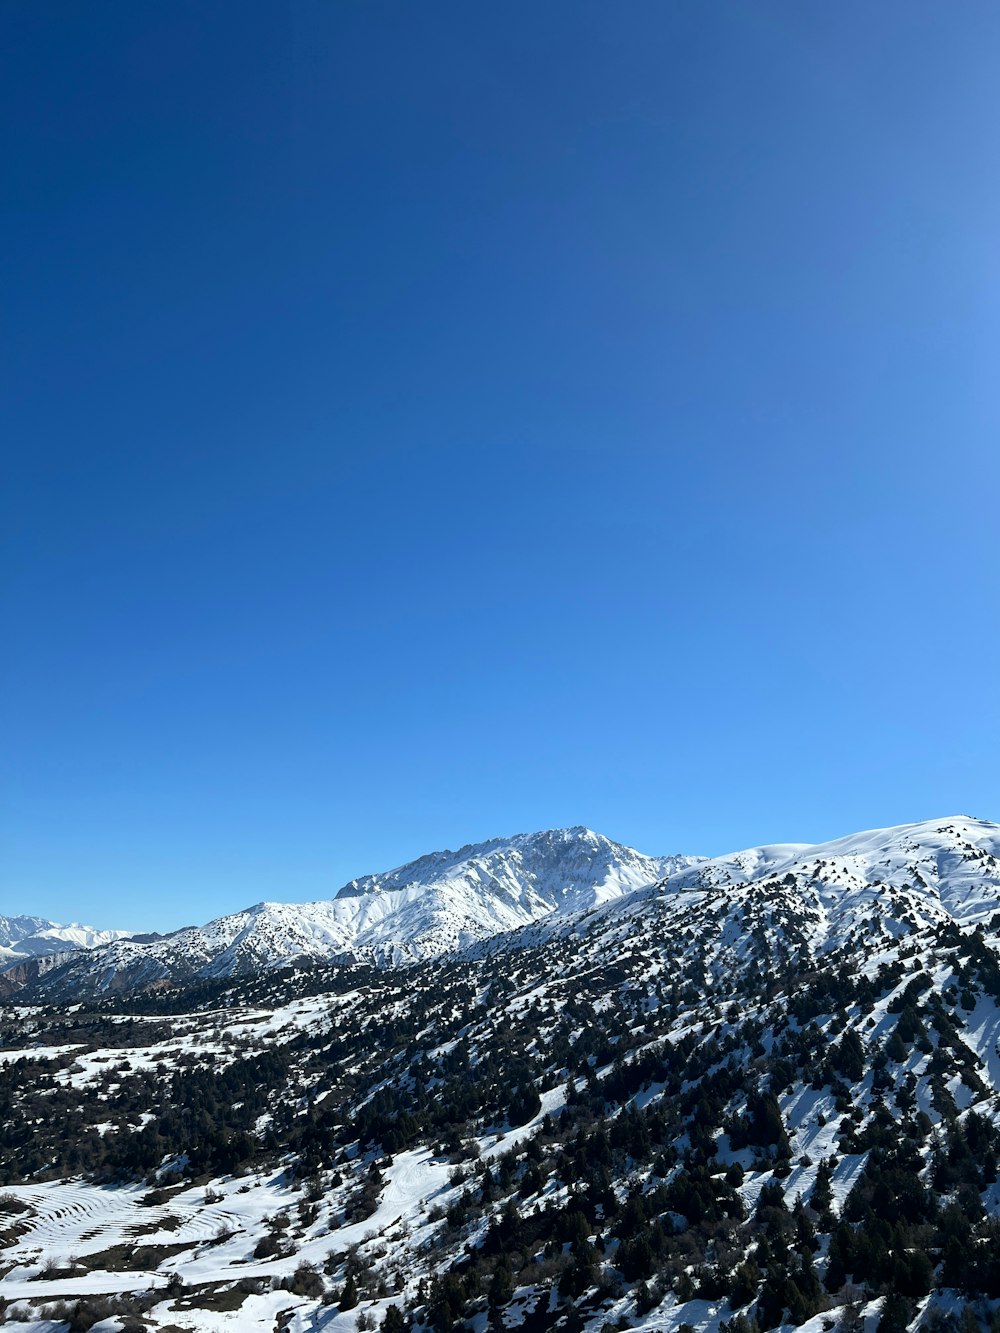 Blick auf eine verschneite Bergkette vom Skilift aus